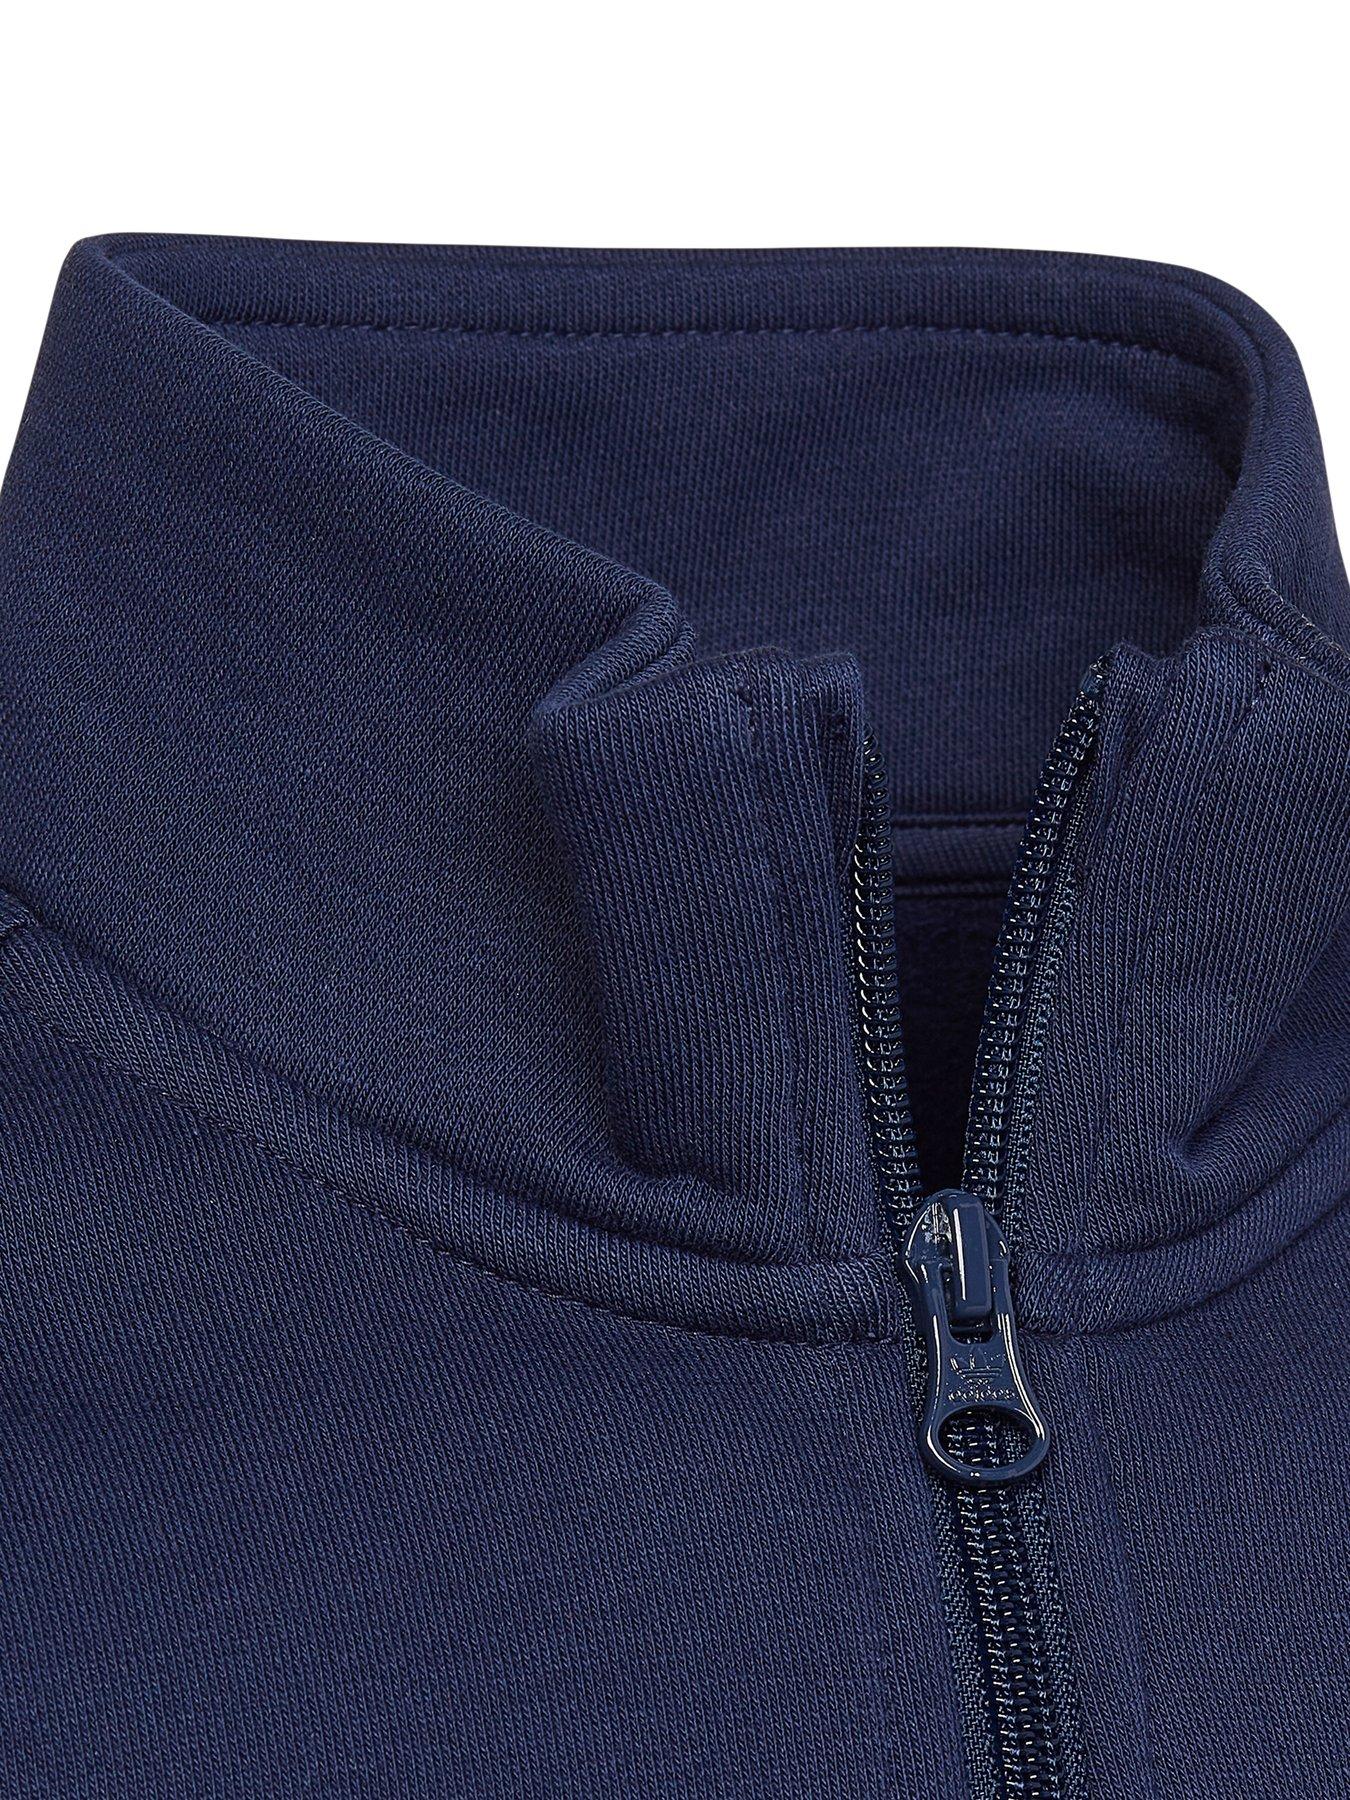 Adicolor Half-Zip Sweatshirt